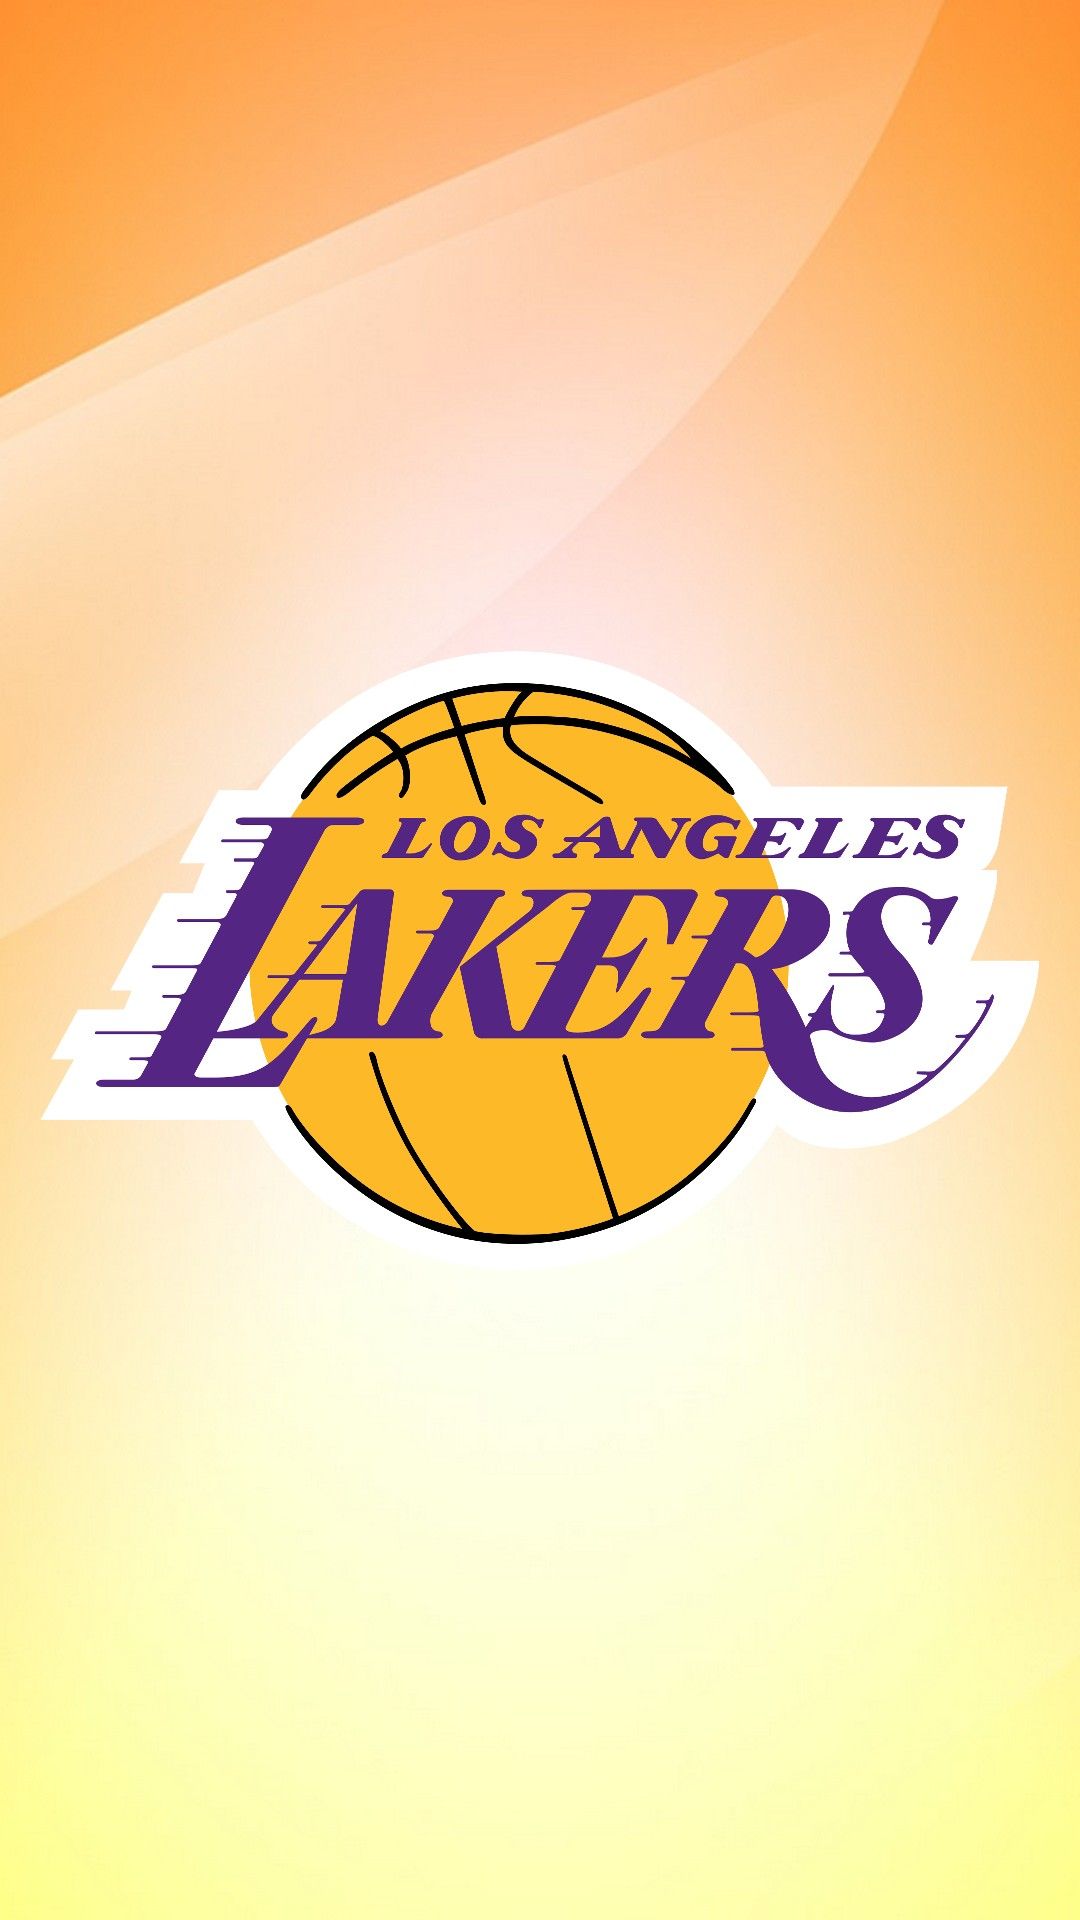 Lakers 2020 Wallpaper